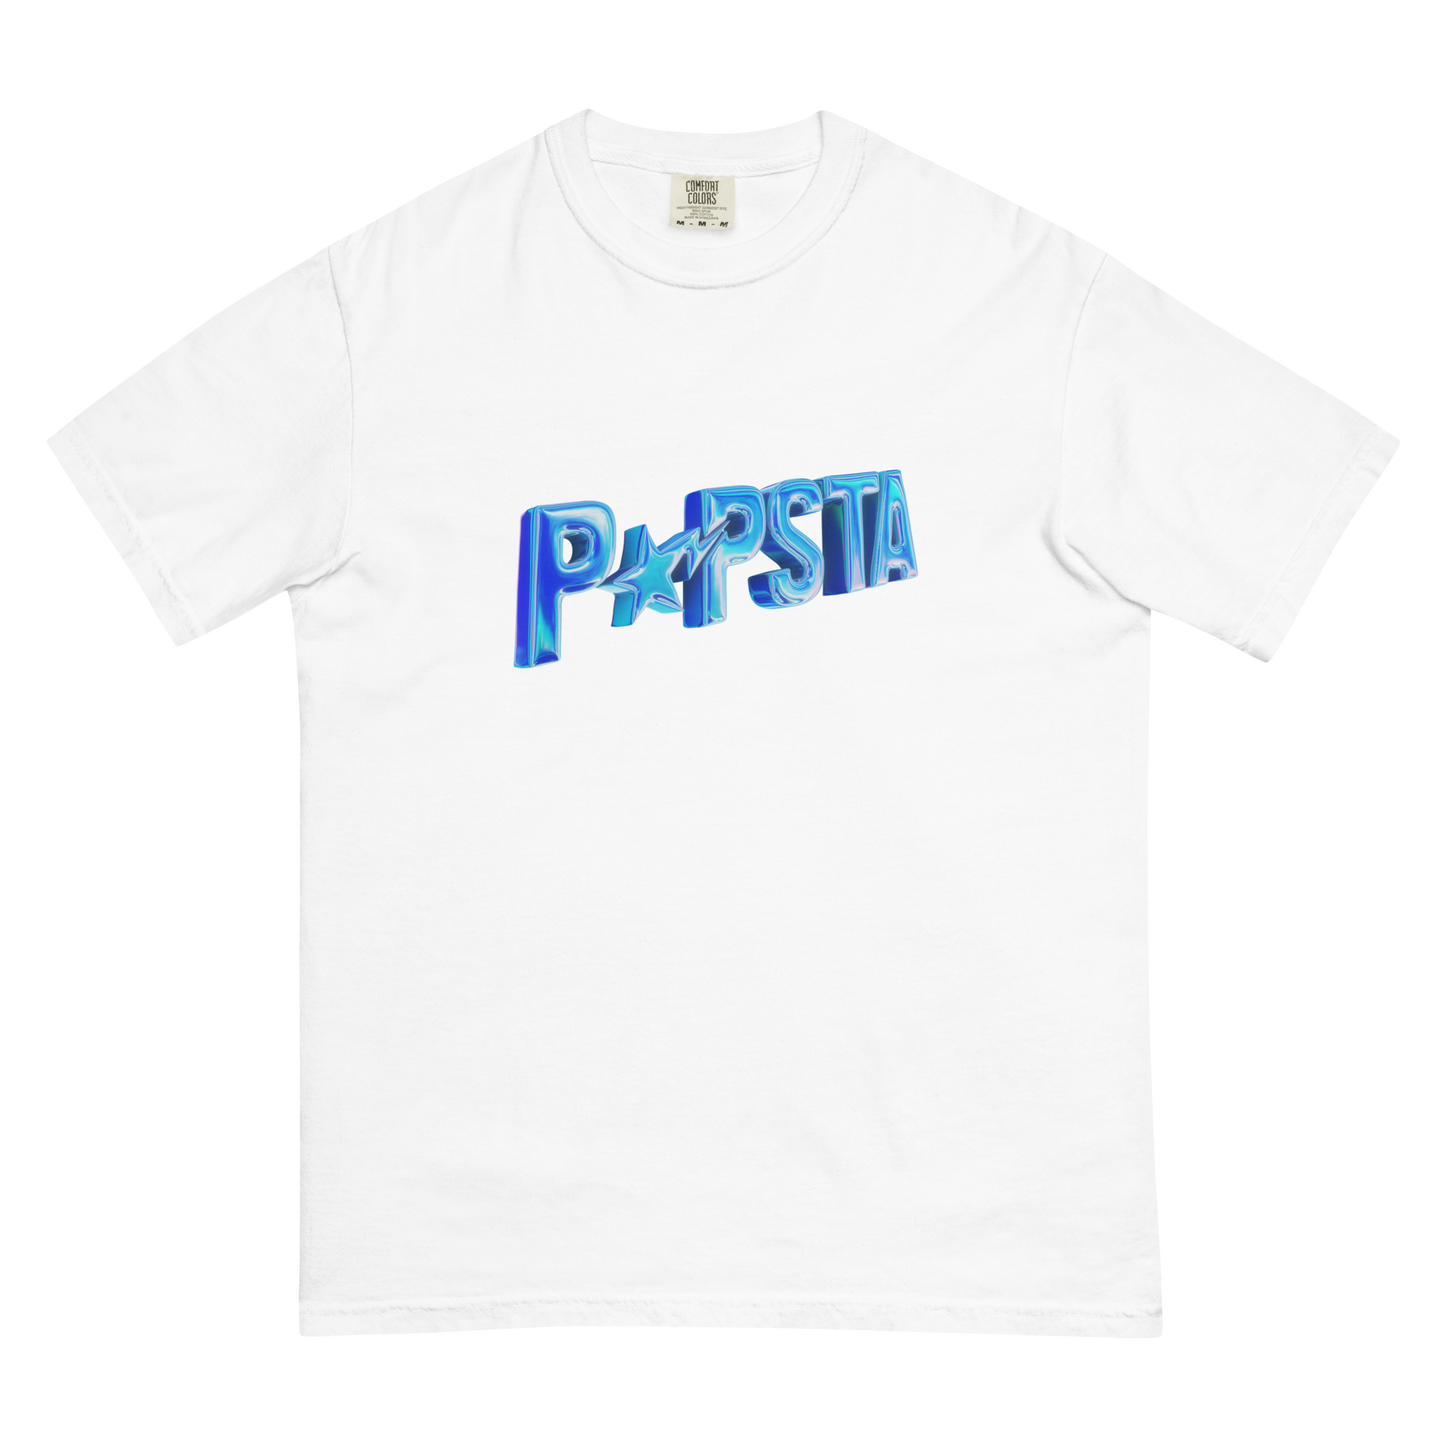 "POPSTA" Heavyweight T-Shirt